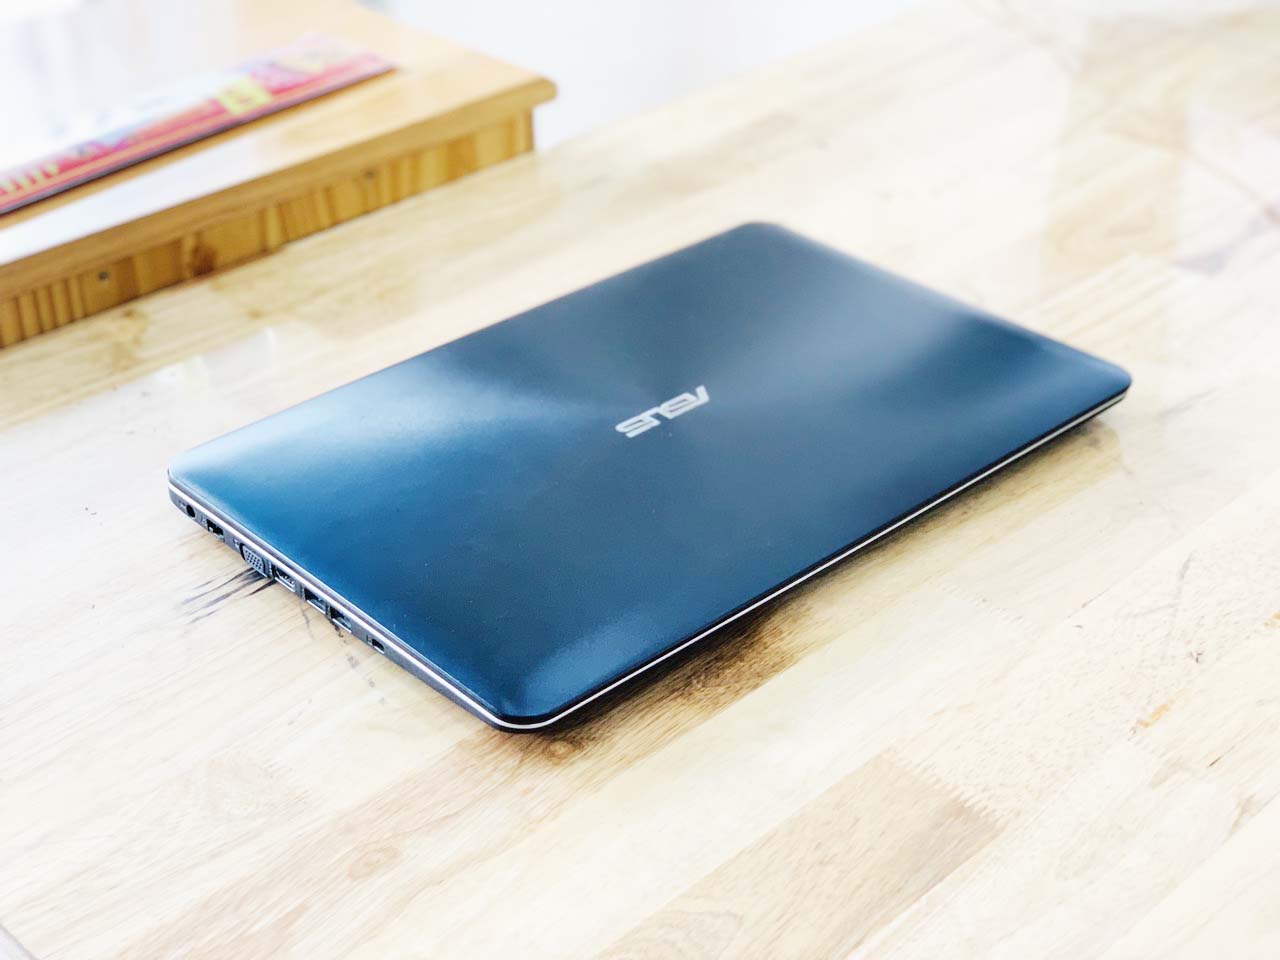 Laptop Asus X555LF i7-5500U Ram 8GB SSD 256GB Vga Rời 2GB 15.6 inch Chiến Game Đồ Hoạ Đỉnh